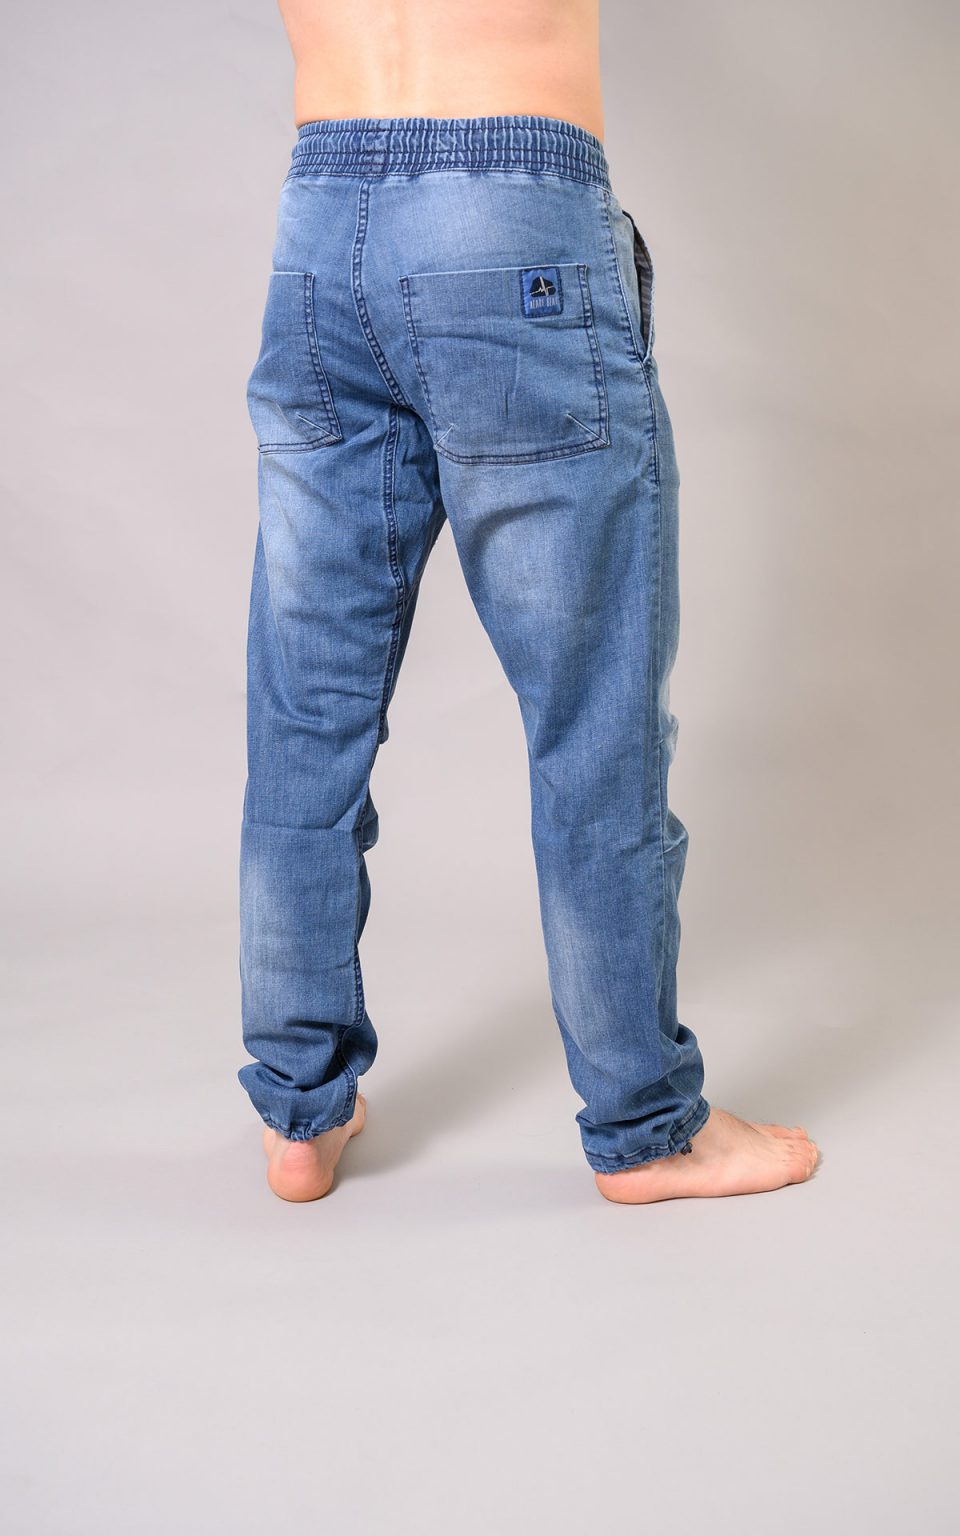 Classic Jeans pants- light blue